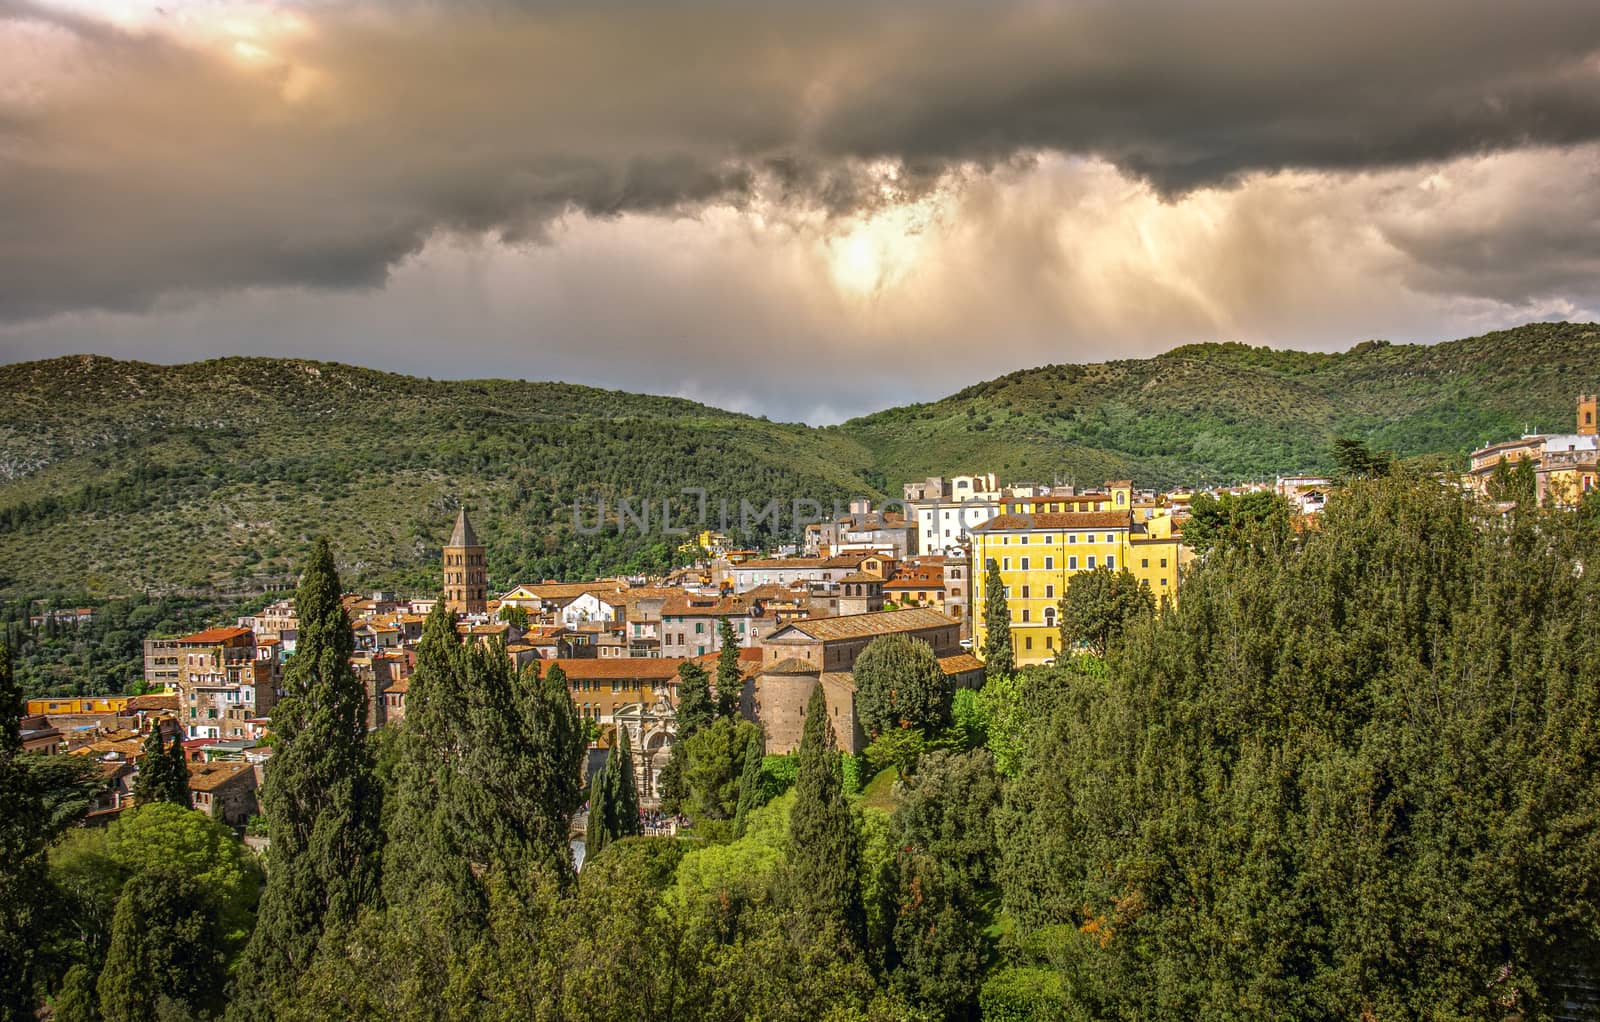 italian town of Tivoli near Rome with dramatic stormy sky by LucaLorenzelli